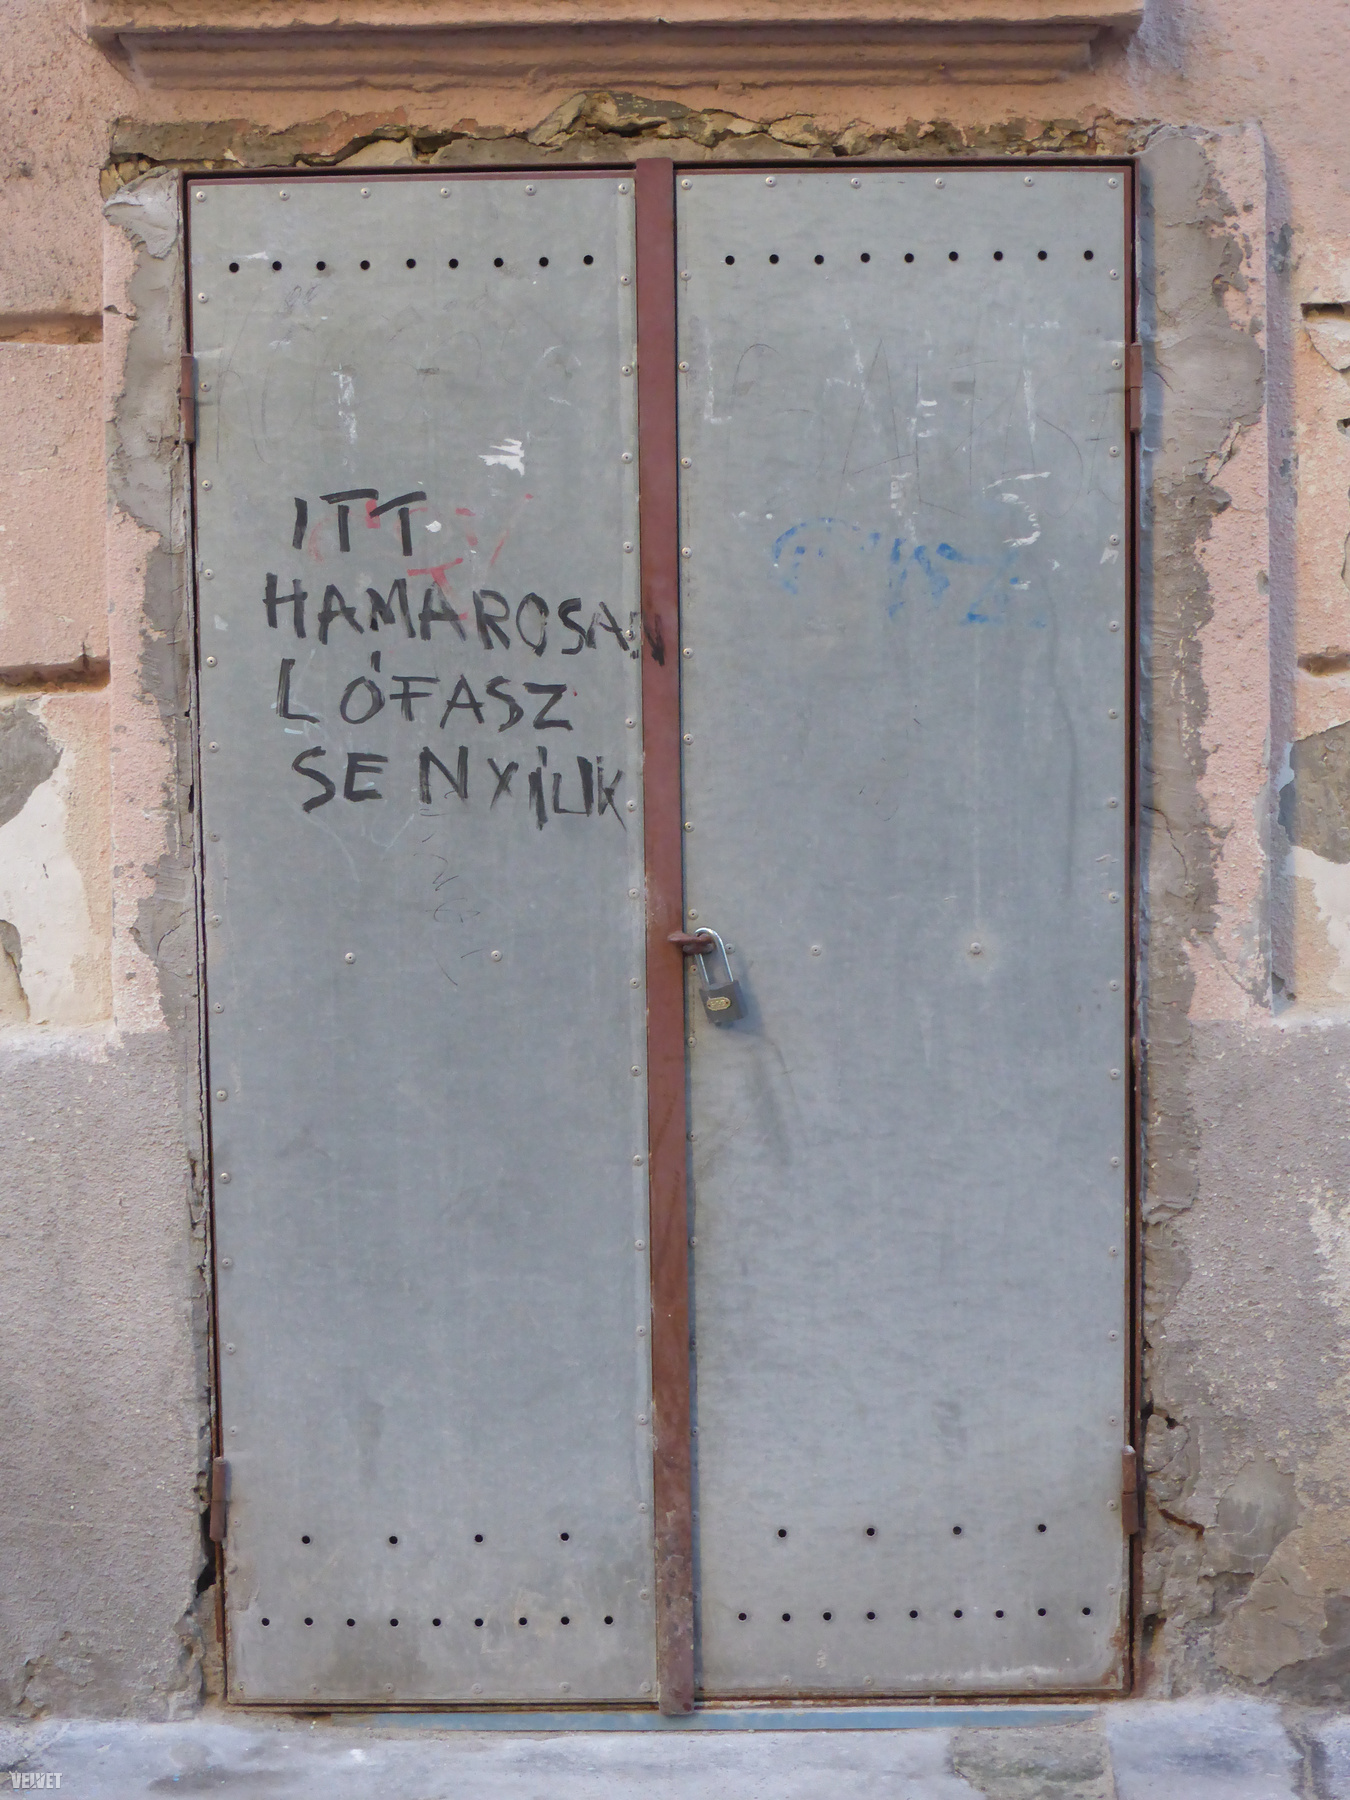 Köszönjük, Marek József utcai ajtóra firkáló graffitiző